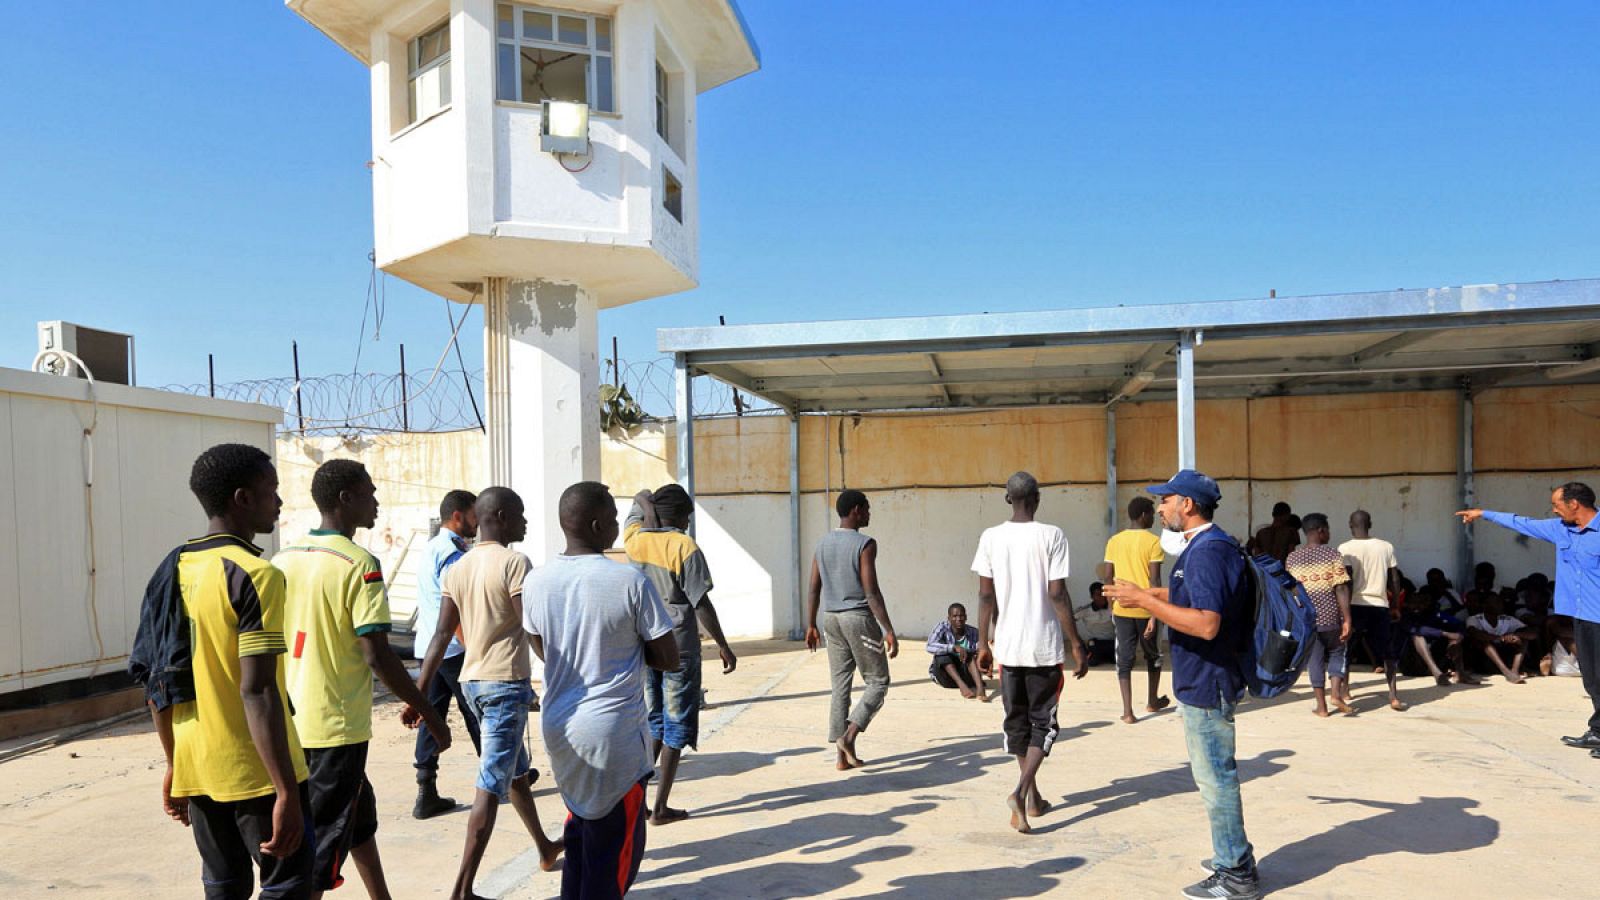 Inmigrantes ilegales de Africa llegando a una base naval en Tripoli después de haber sido rescatados por la Guardia Costera de Libia en el Mar Mediterráneo.